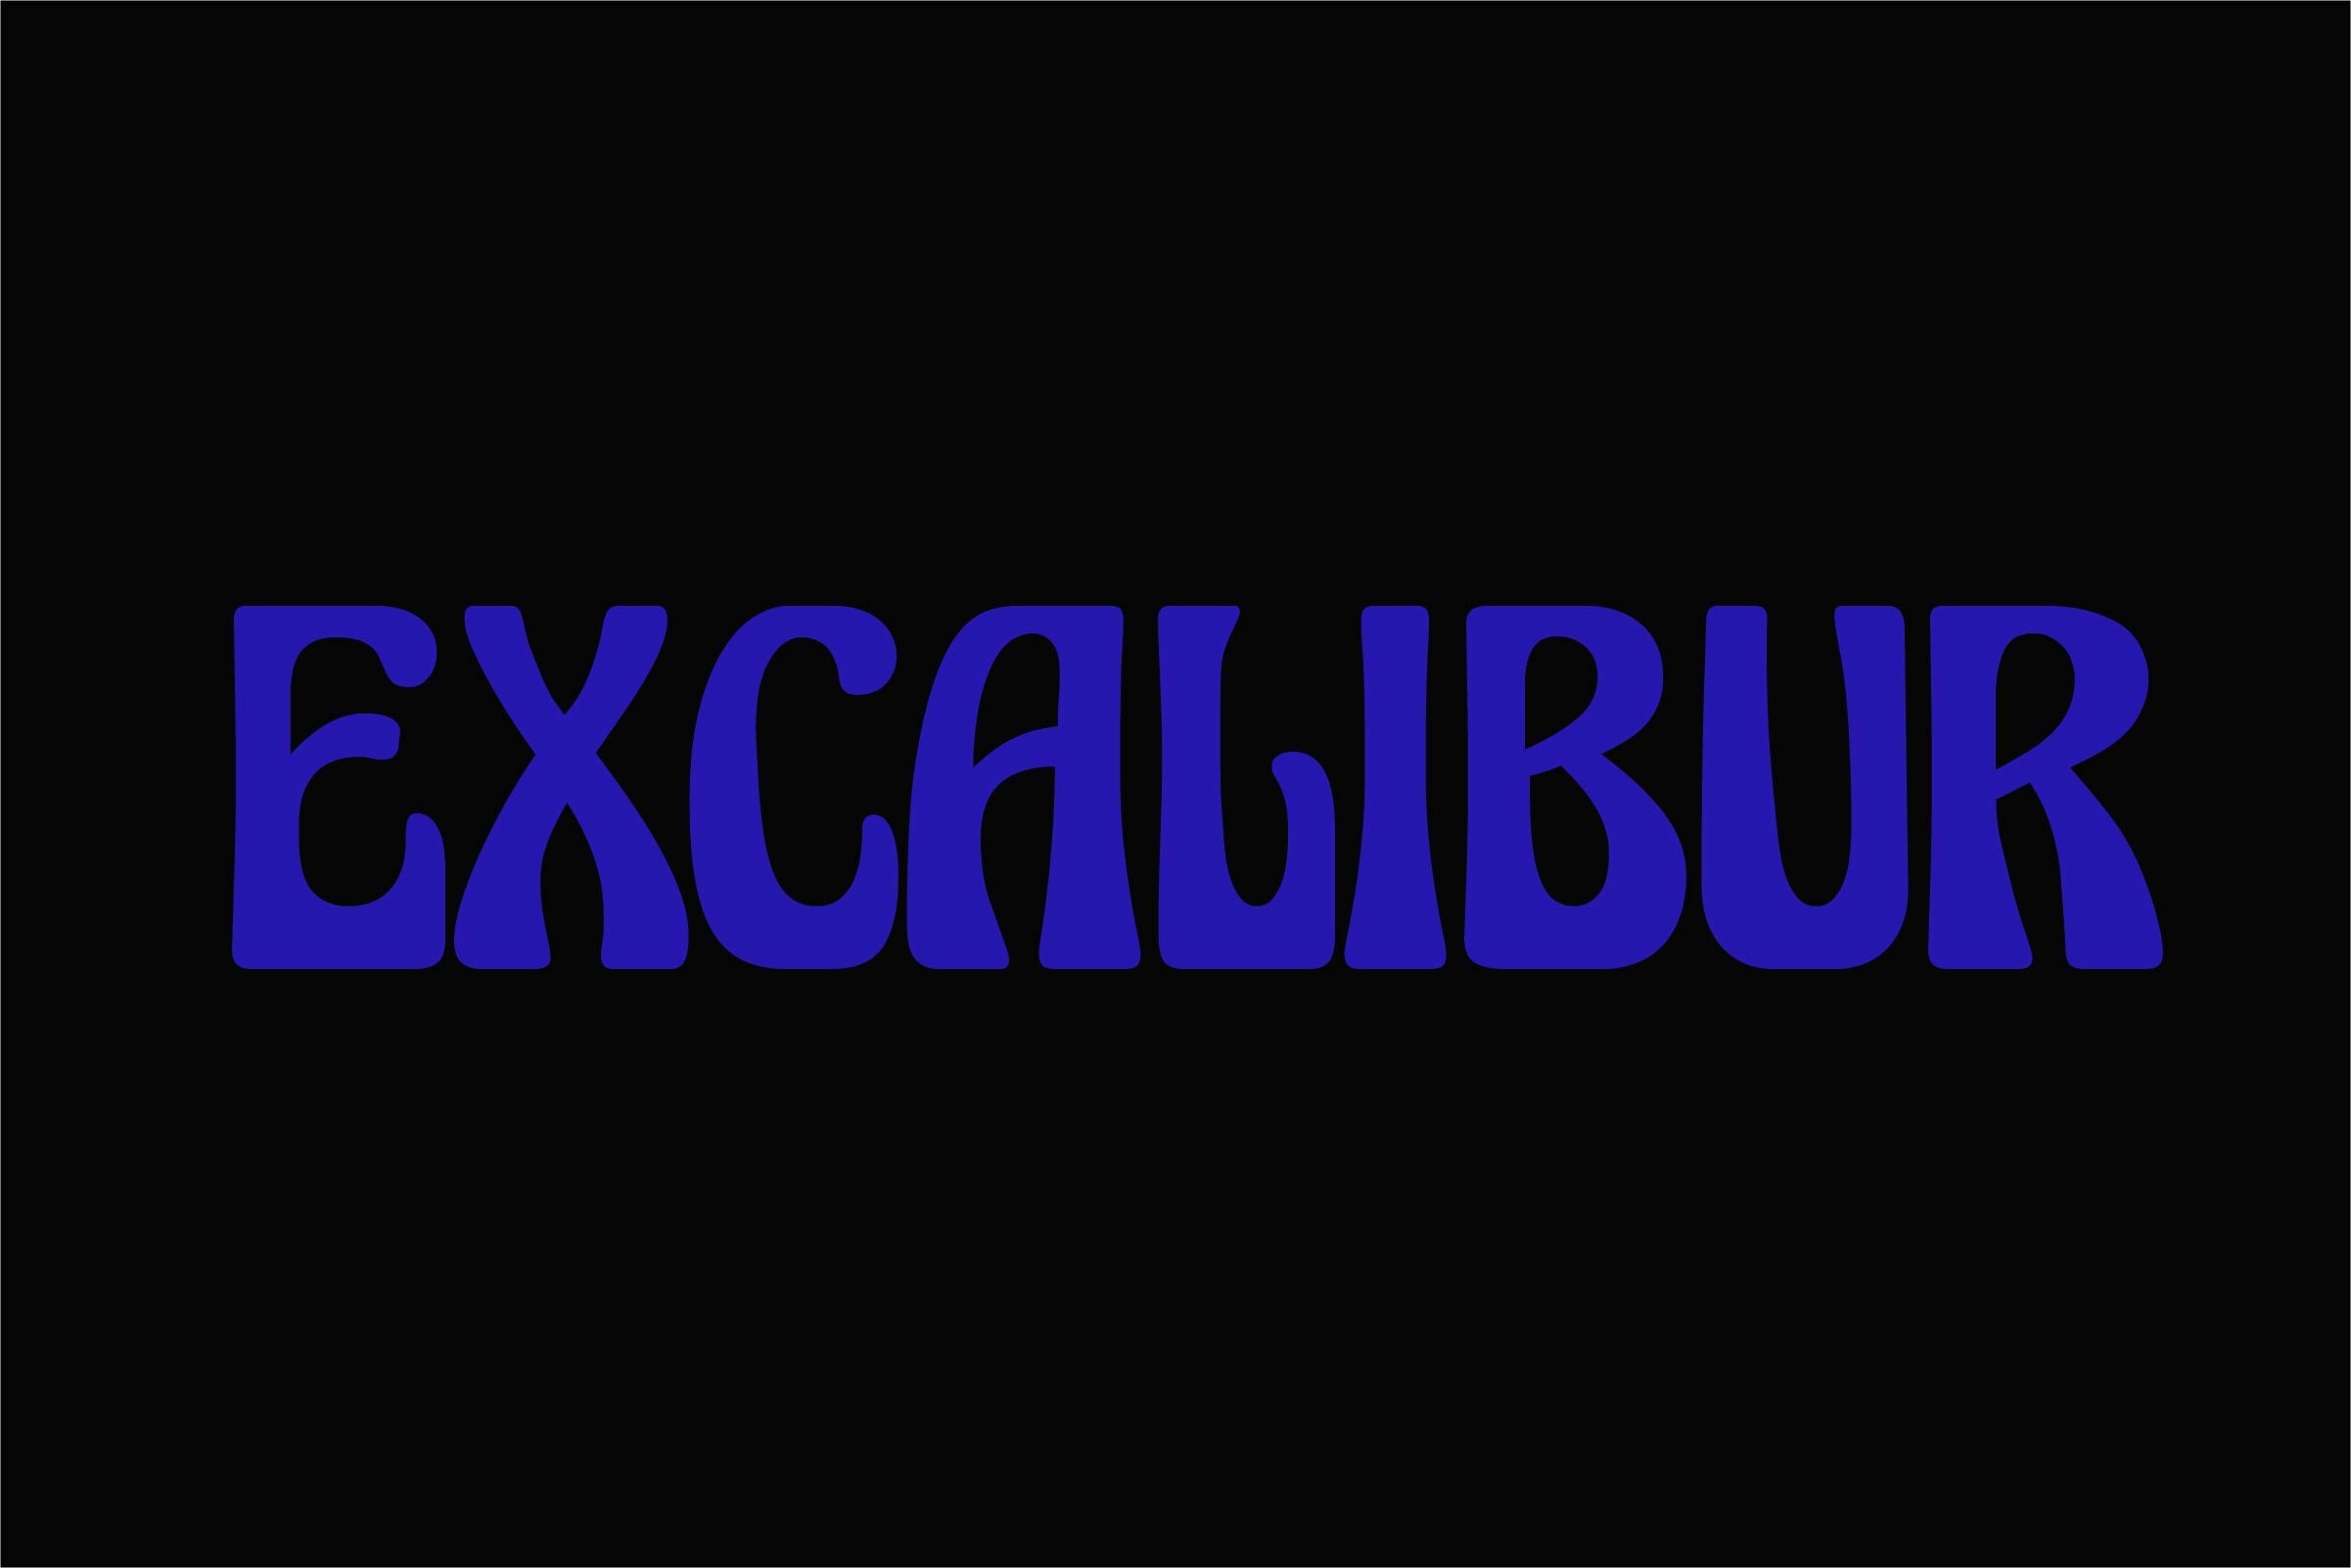 Beispiel einer Excalibur-Schriftart #1